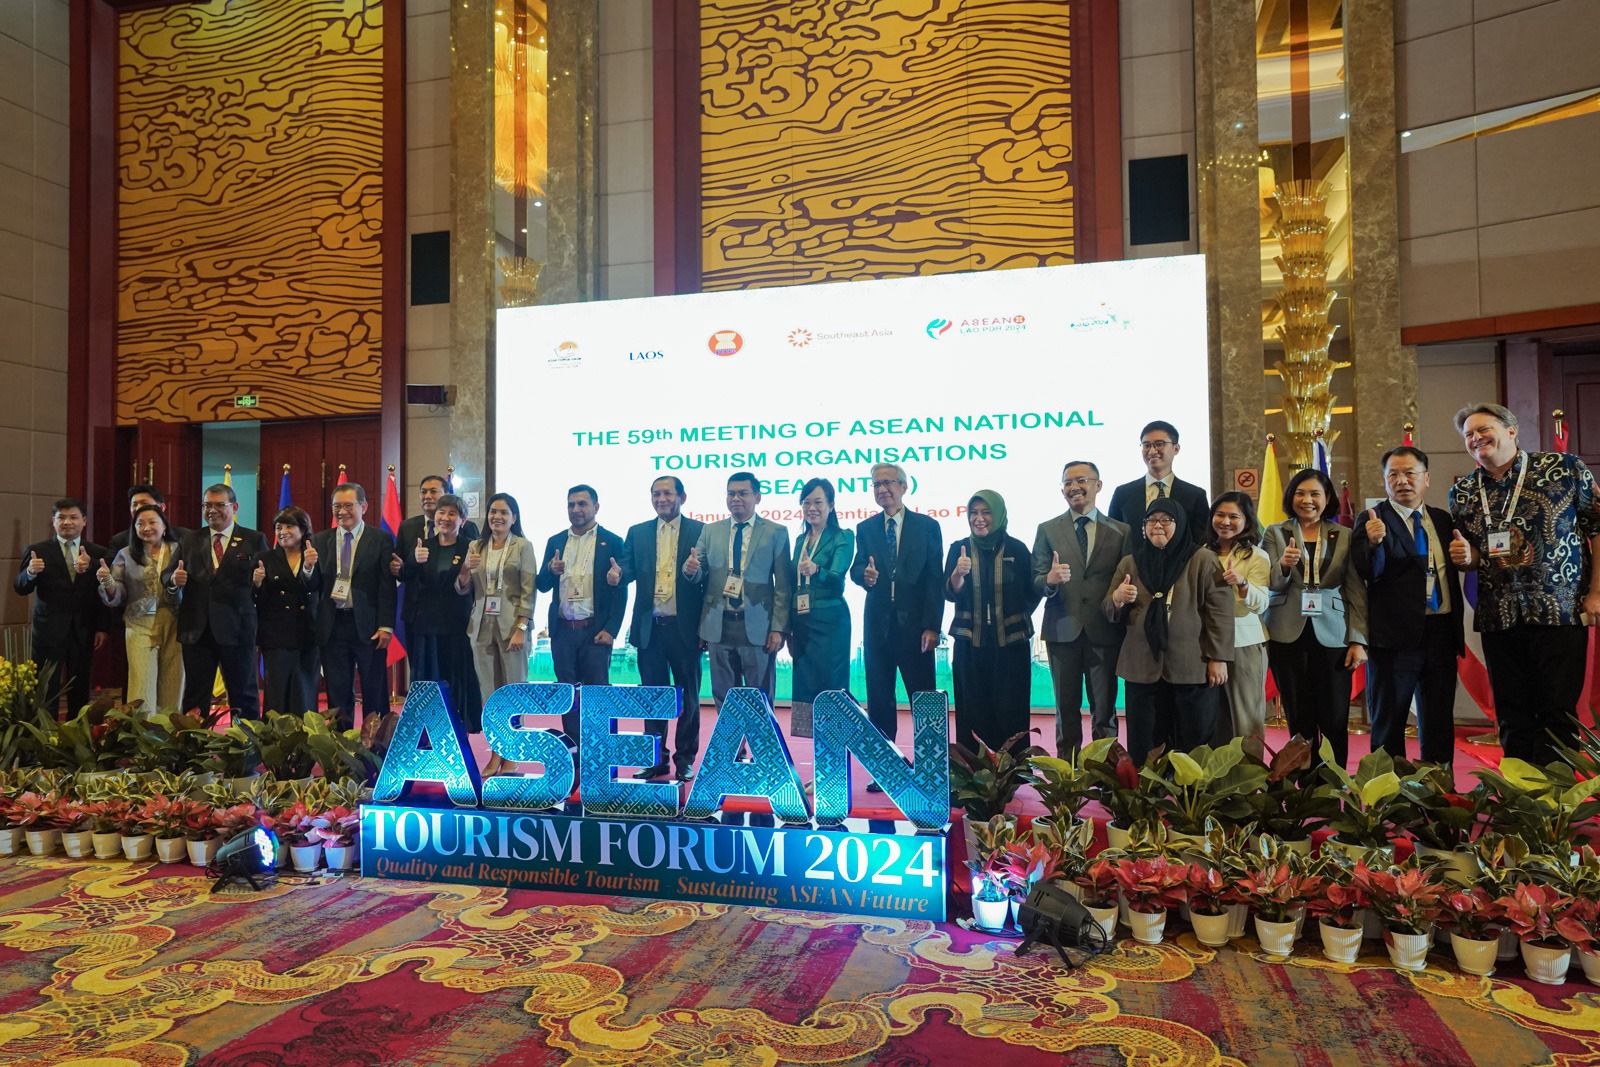 INDONESIA IKUTI RANGKAIAN PERTEMUAN ASEAN TOURISM FORUM 2024 DI LAOS